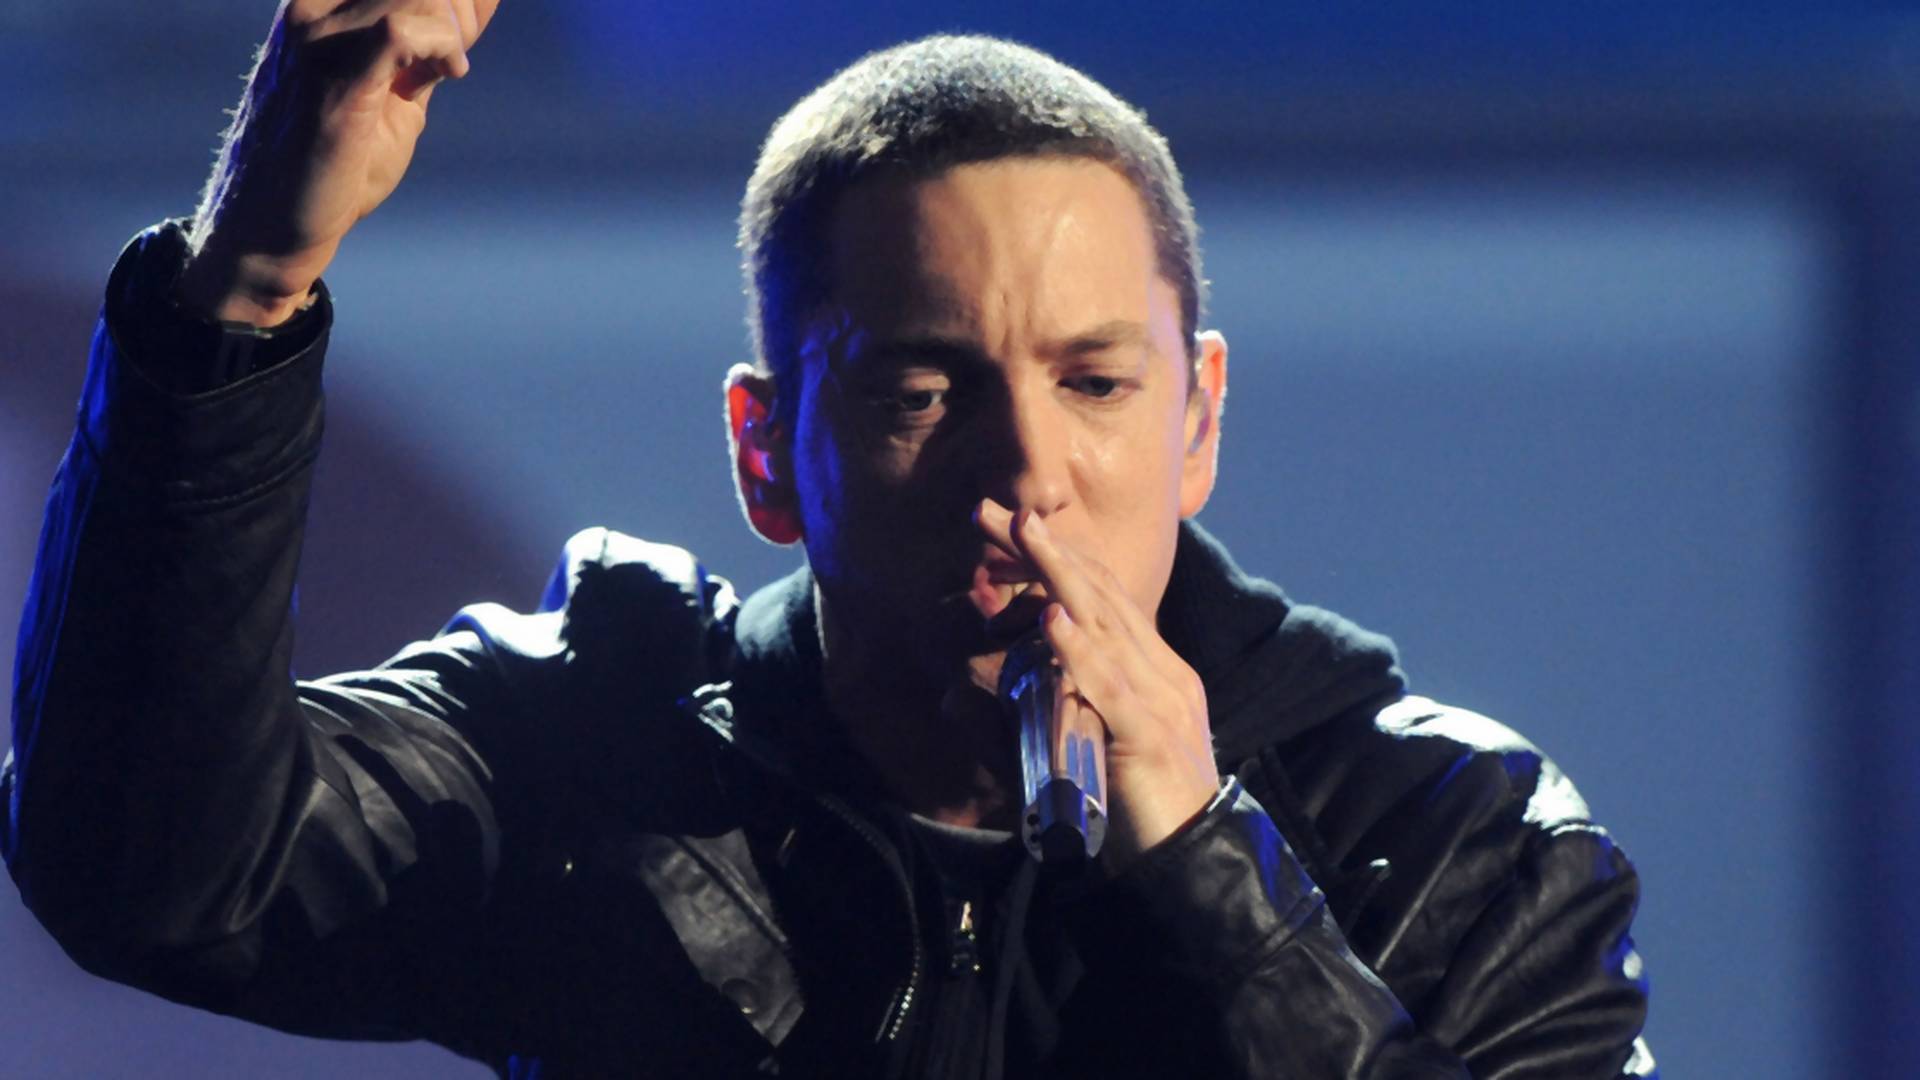 Koniec leta s veľkým prekvapením: Eminem potichu vydal nový album Kamikaze